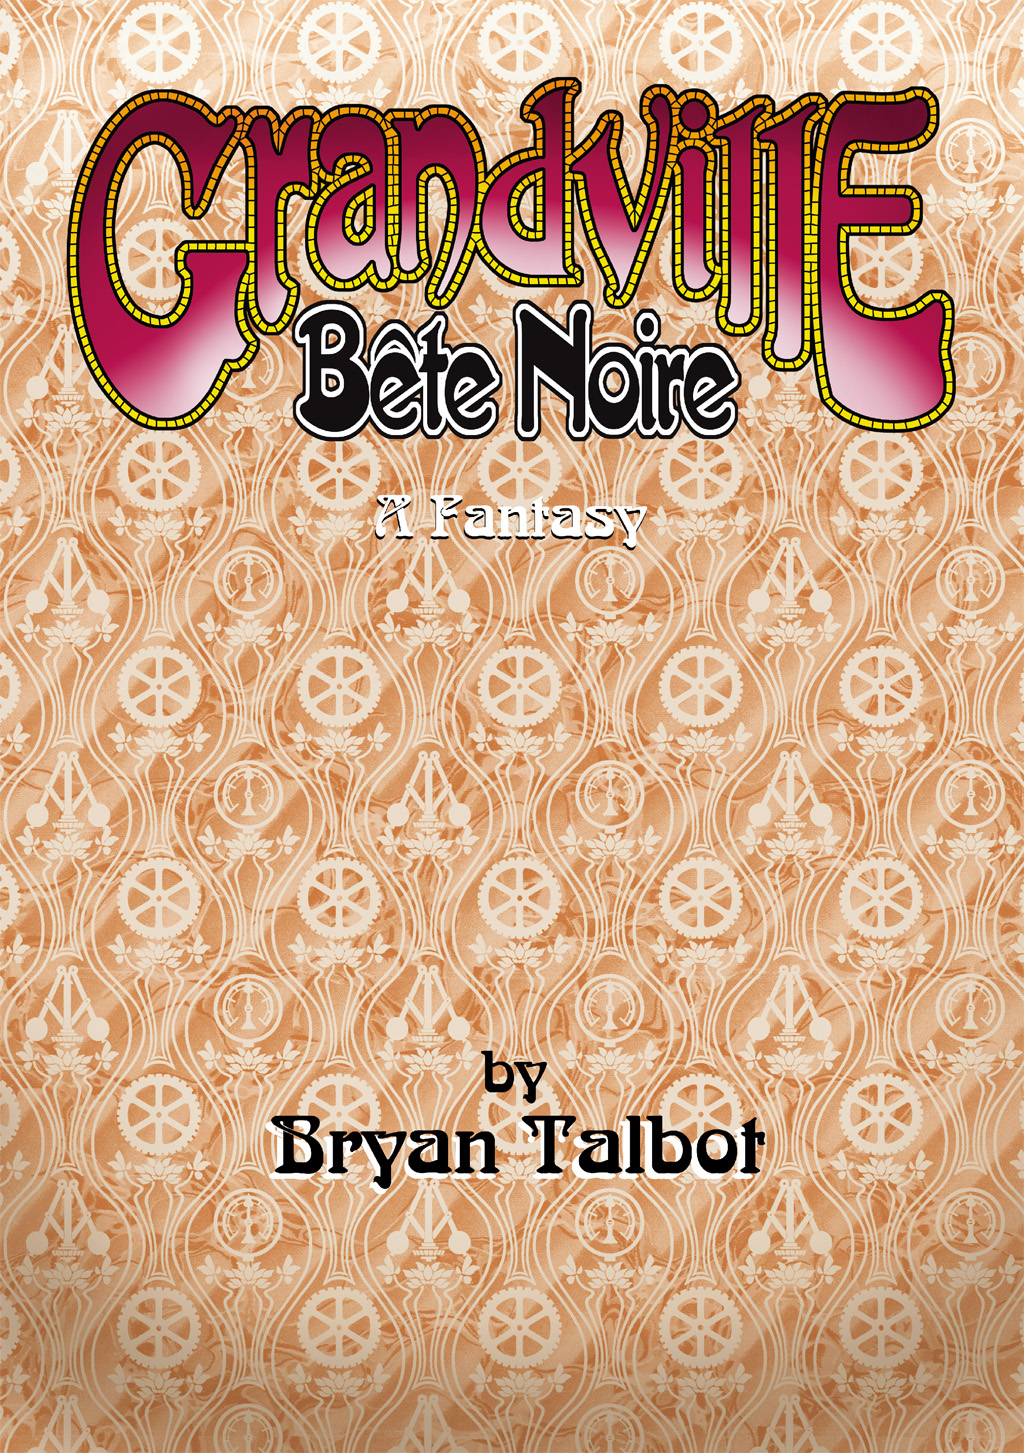 Read online Grandville comic -  Issue # Vol. 3 Bete Noire - 12